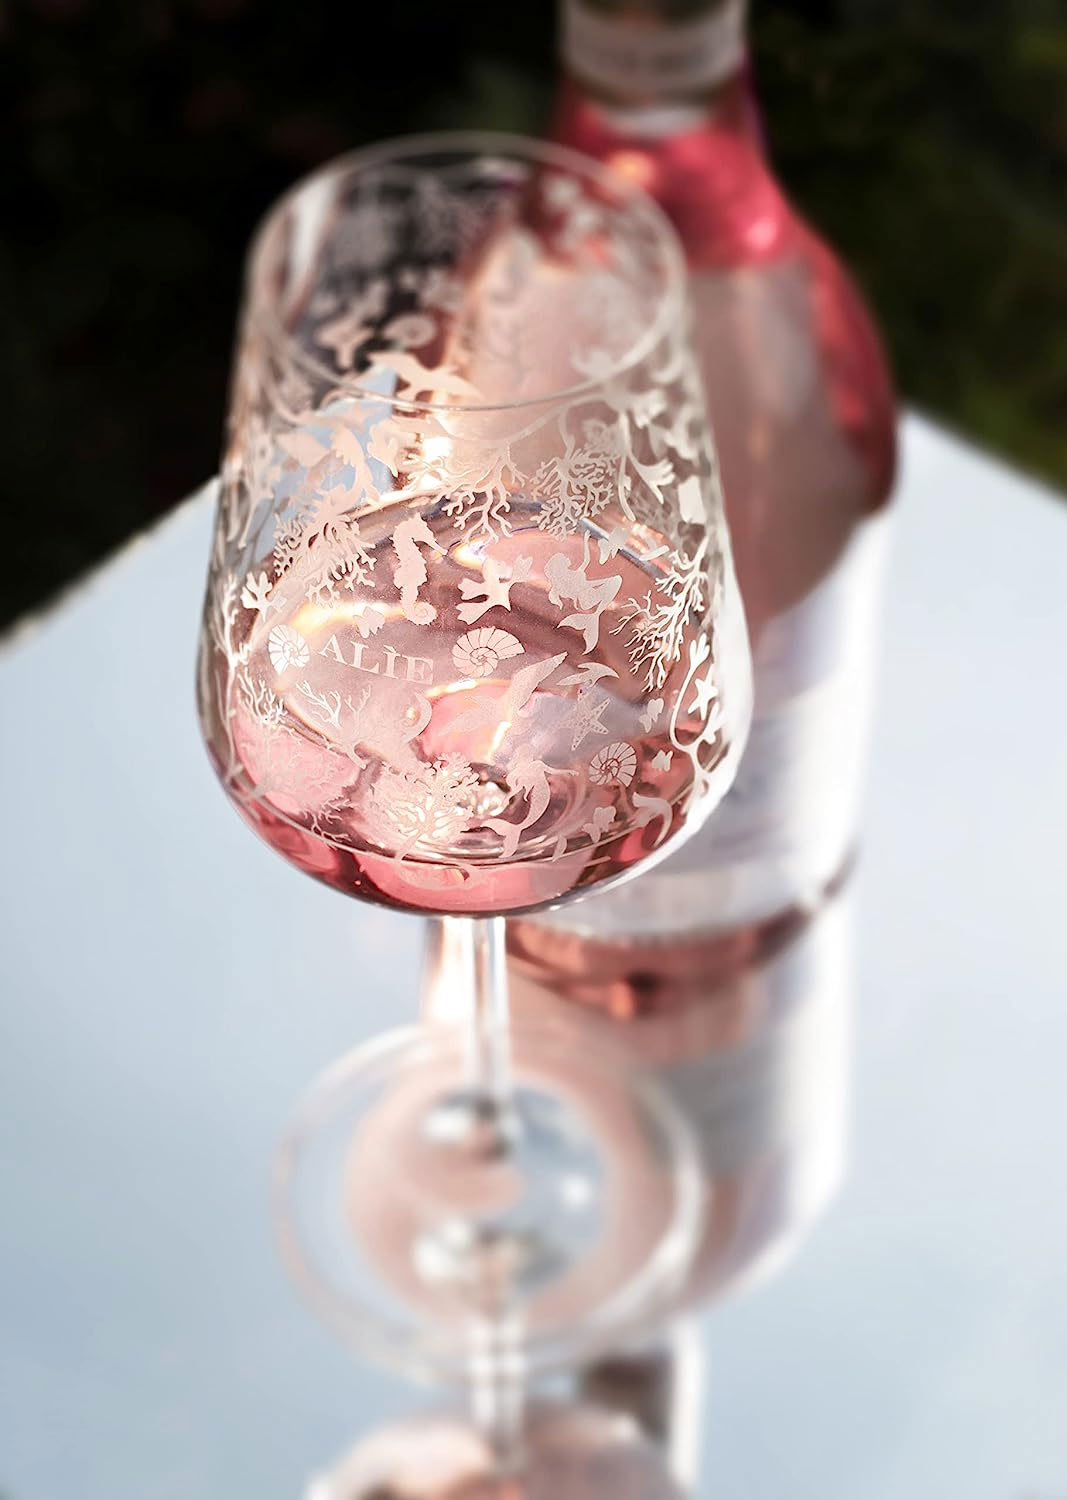 Rose Wein - Alie Frescobaldi Rosé 750ml (12,5% Vol)- [Enthält Sulfite]